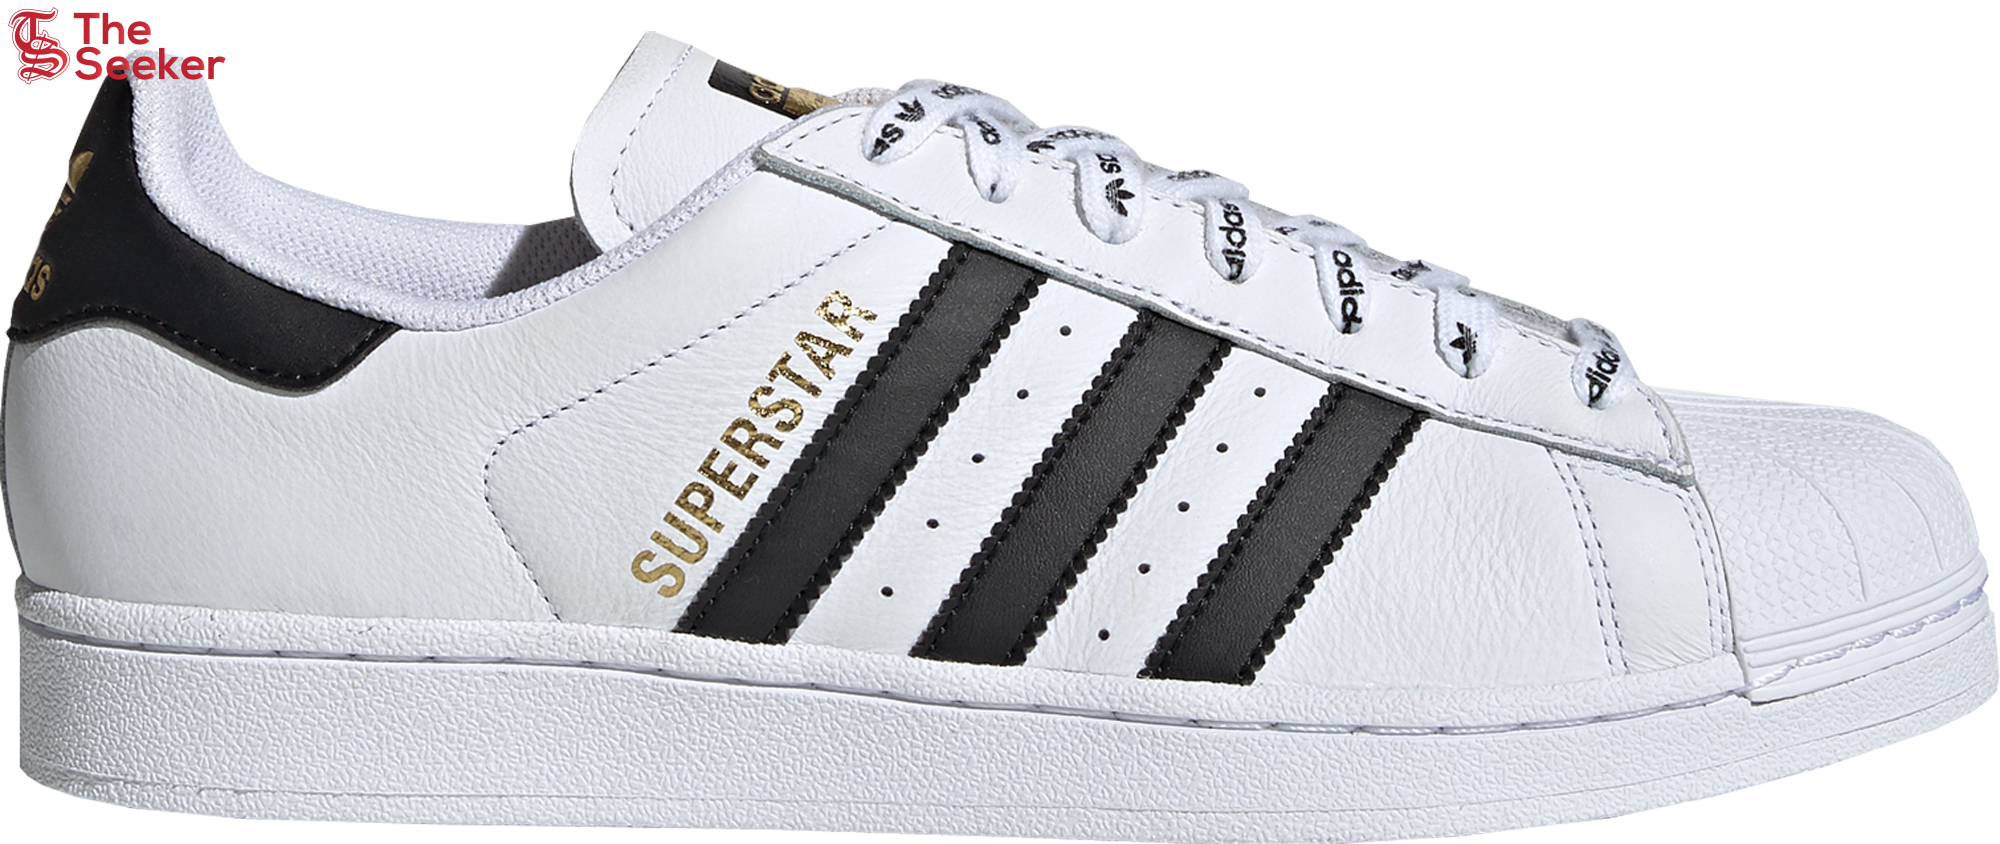 adidas Superstar 1986 White Black